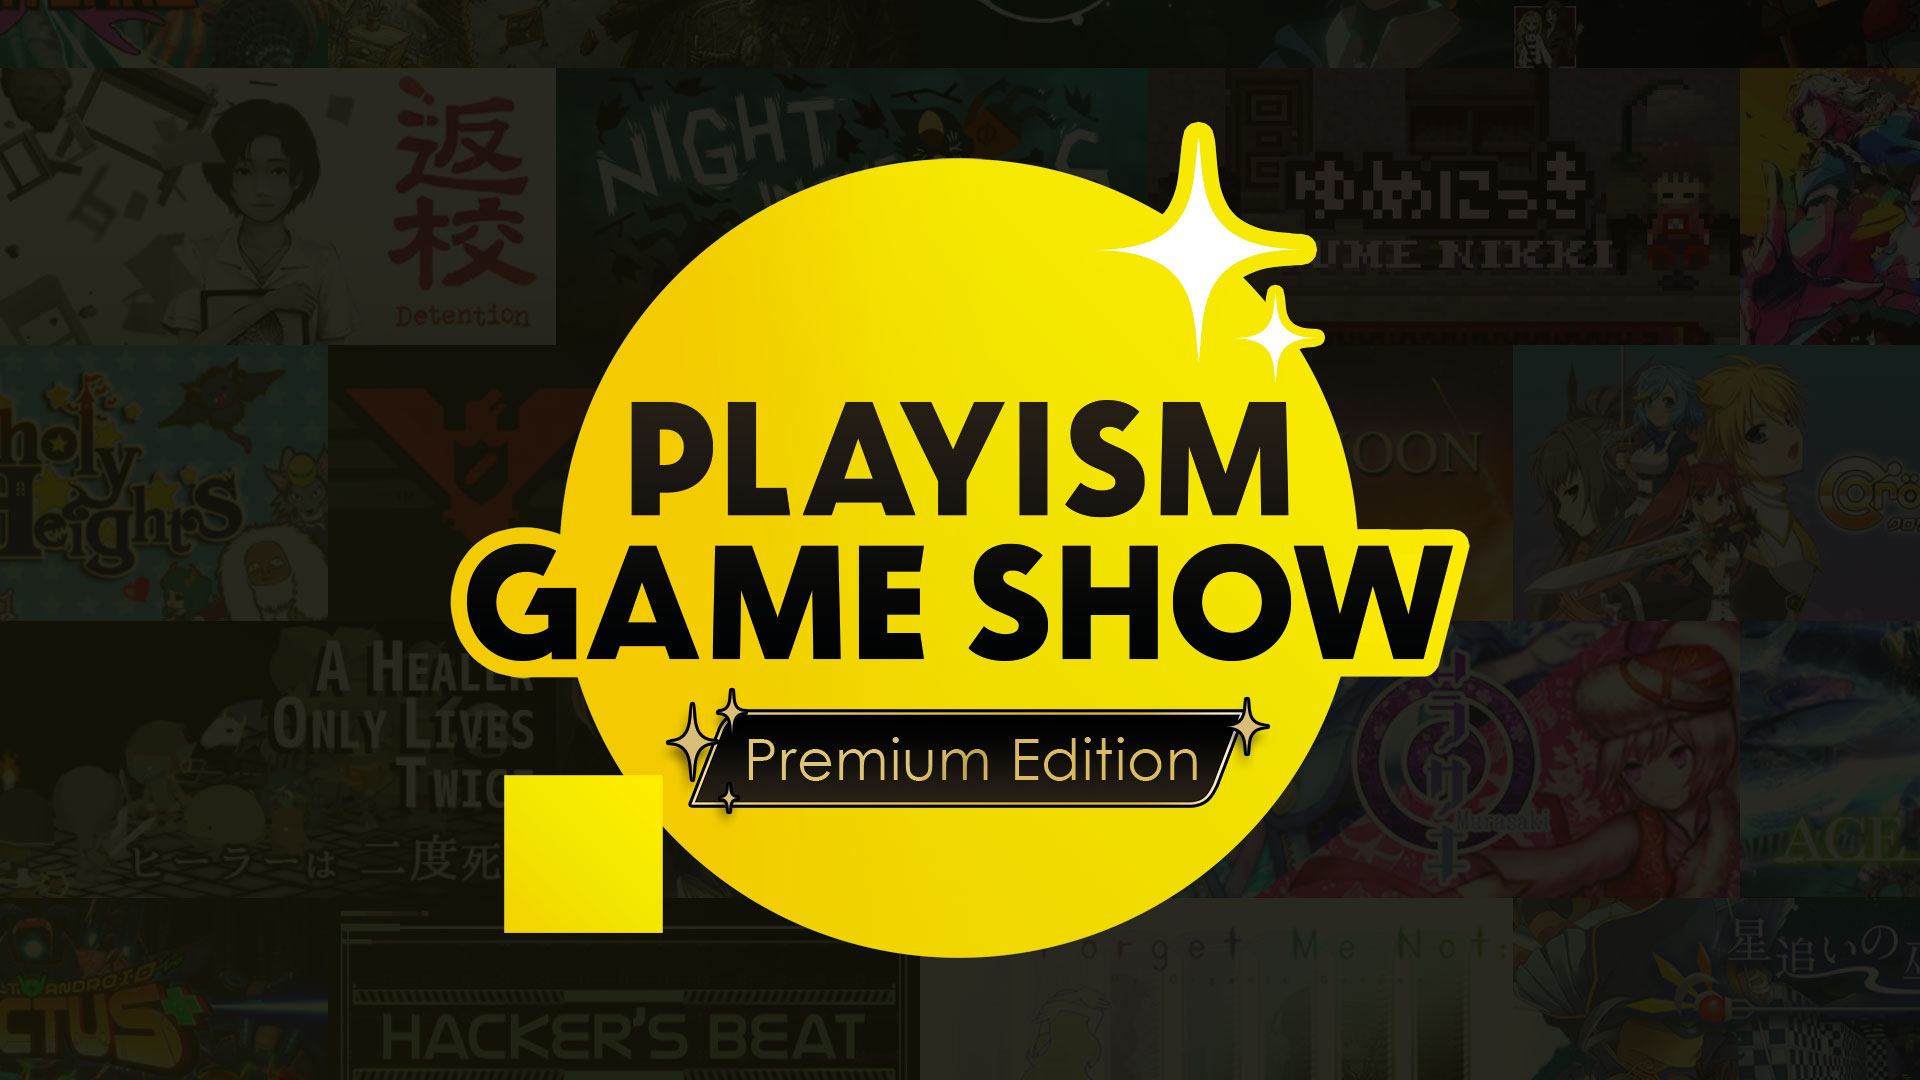 Playism Game Show Premium Edition annunciato per il 25 settembre